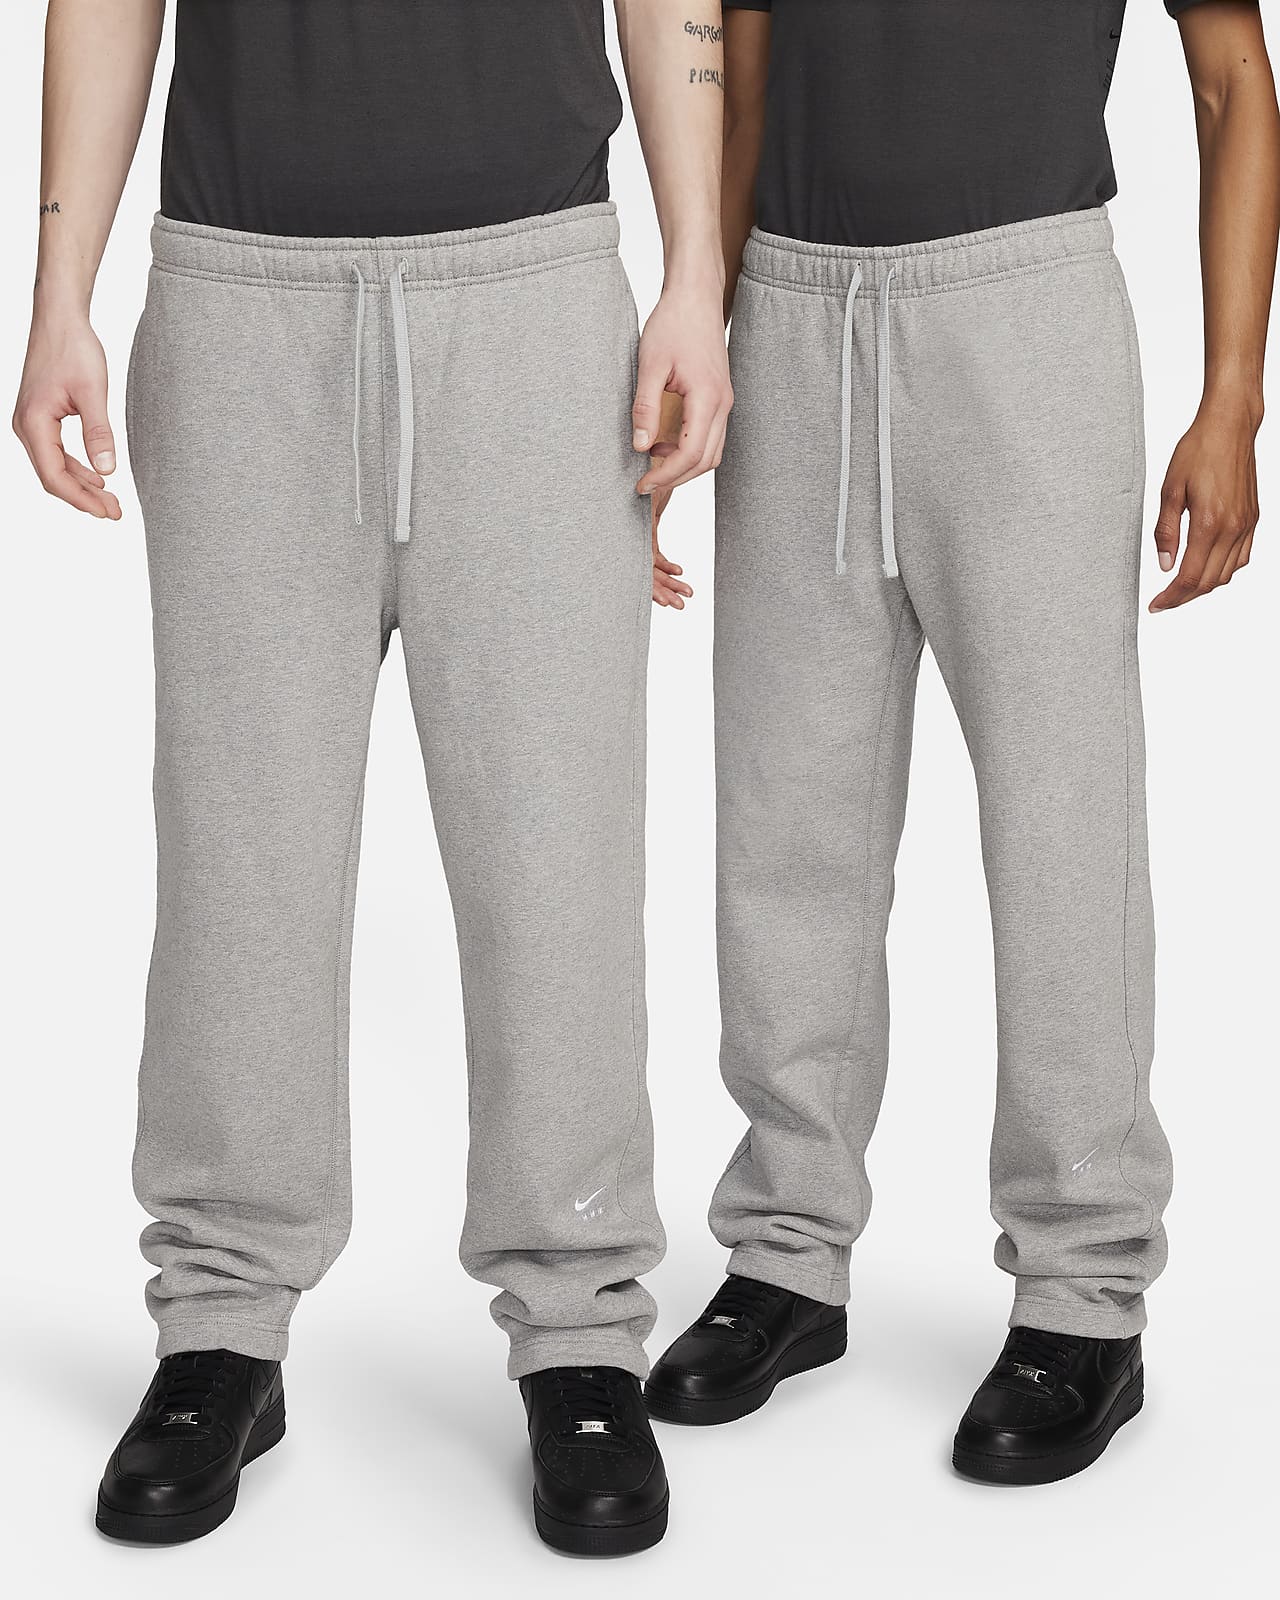 Flísové kalhoty Nike x MMW